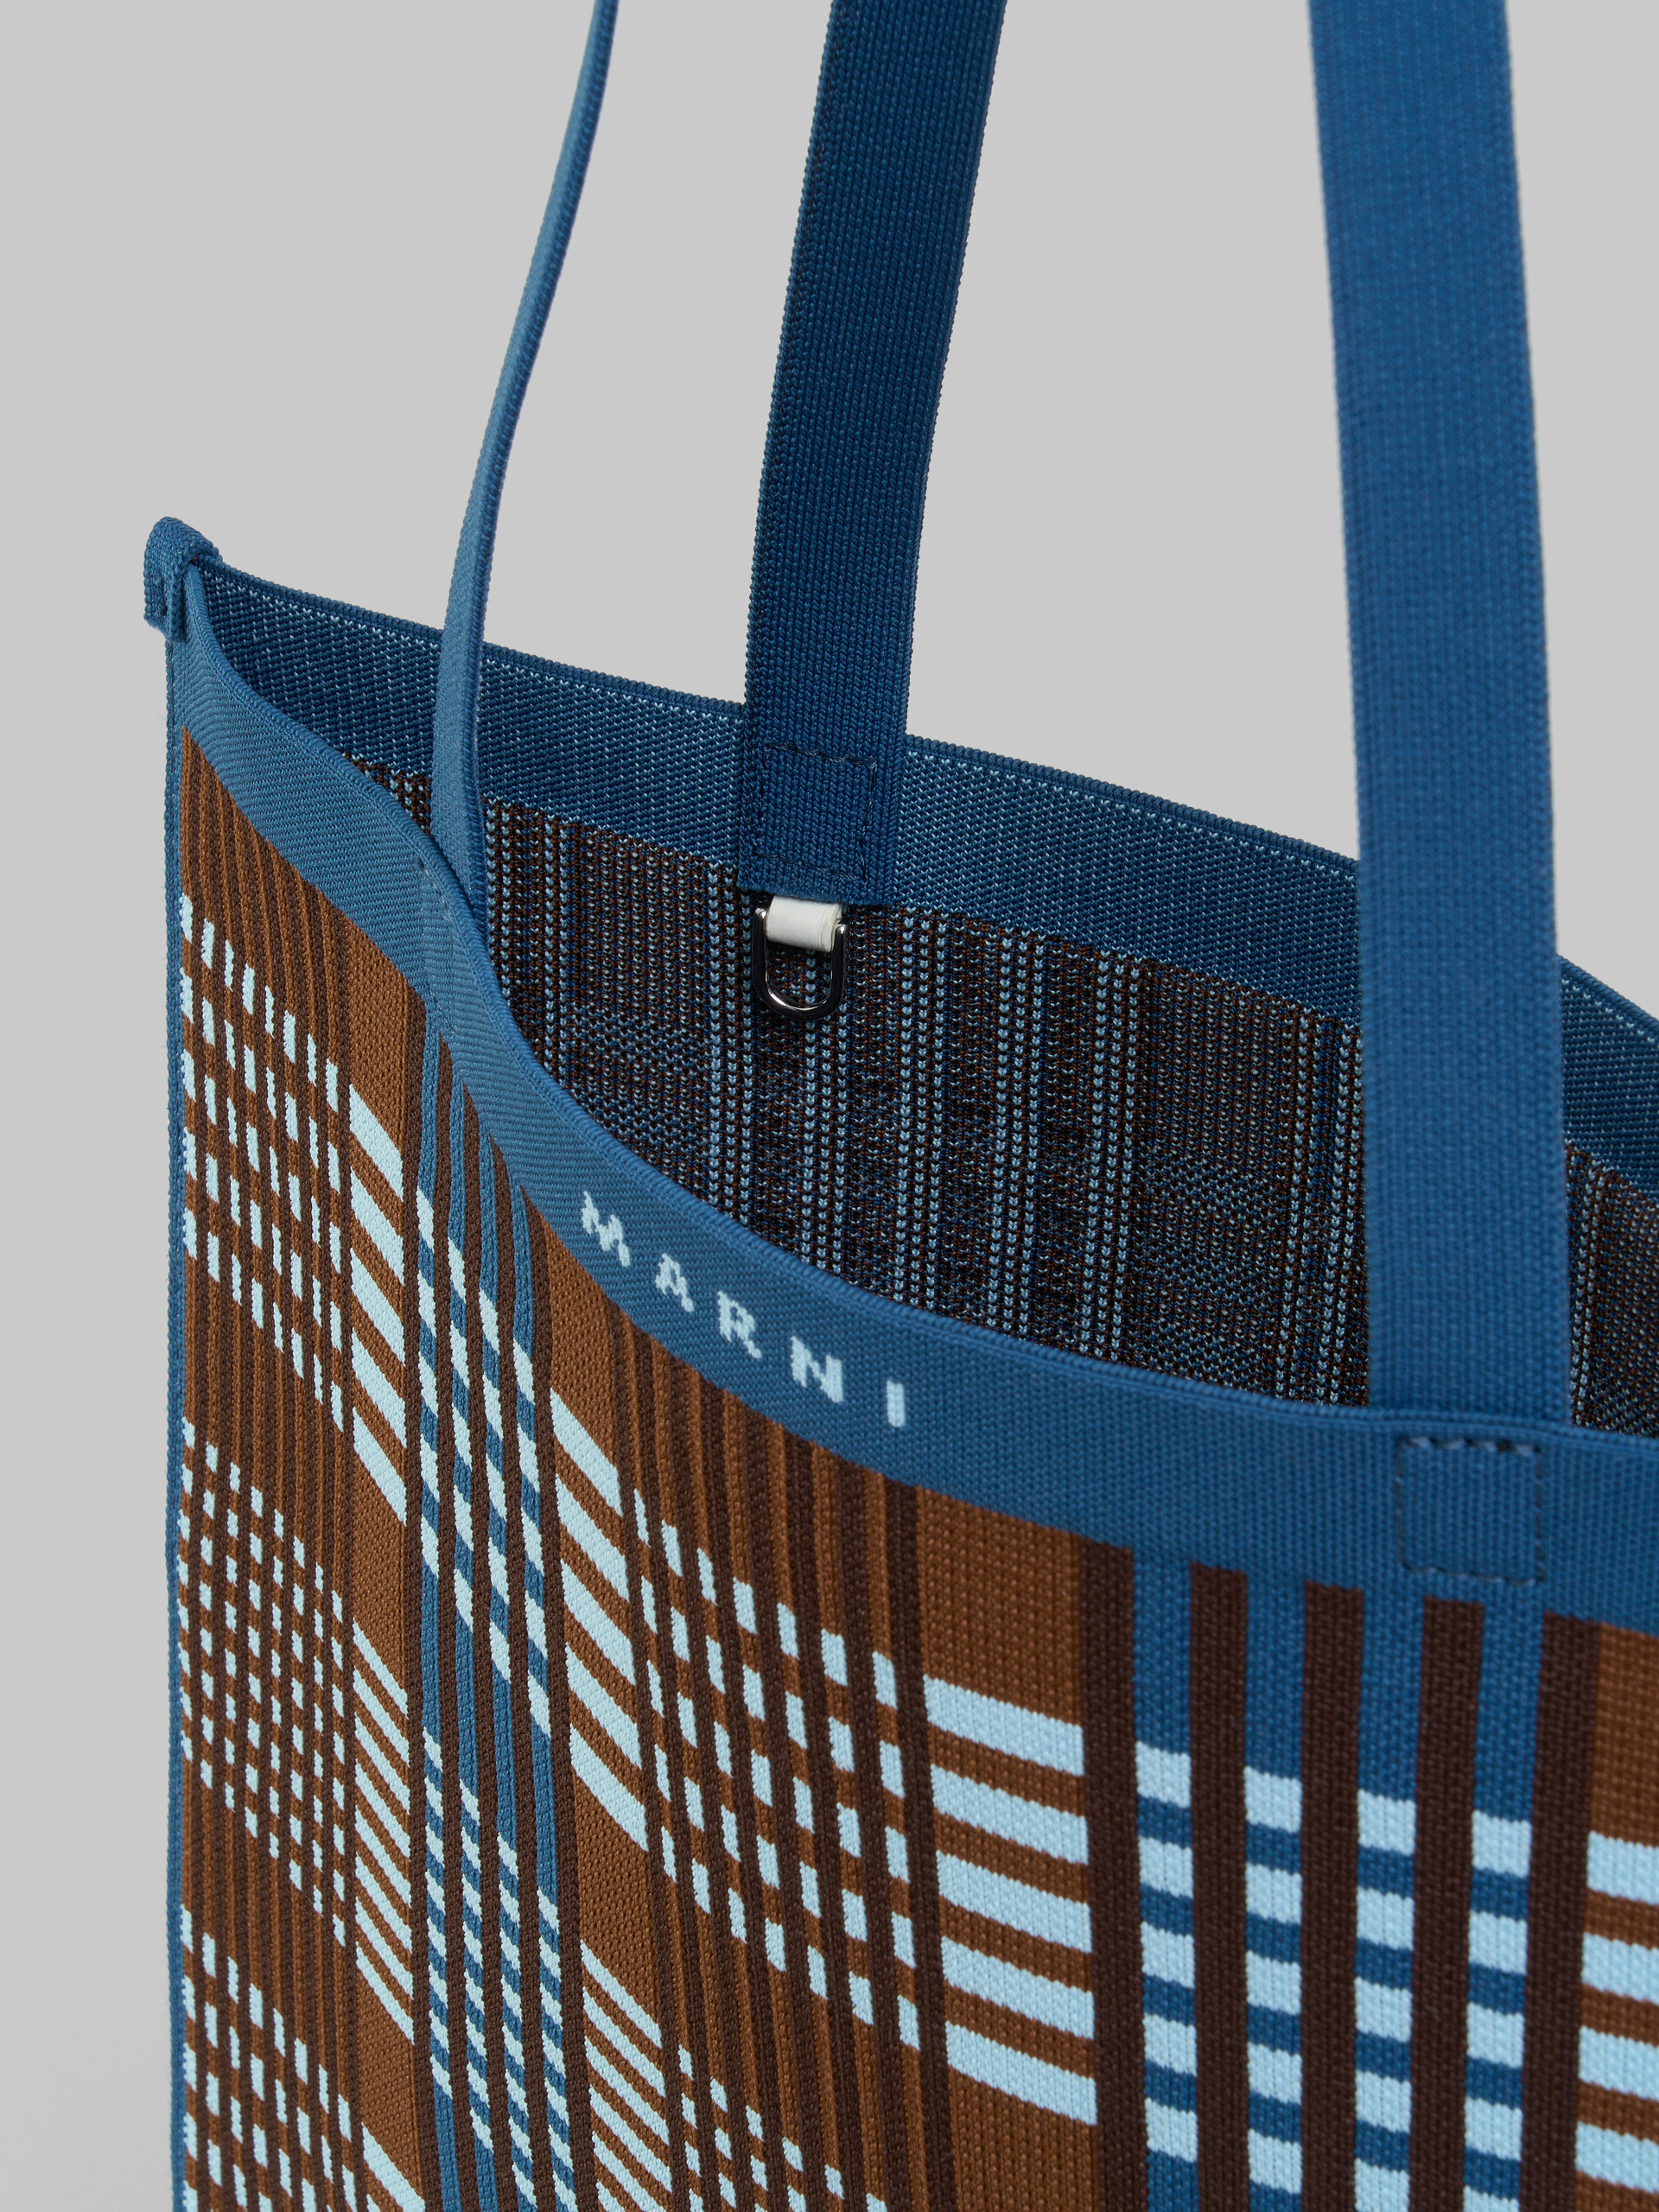 Tote Bag in jacquard a quadri marrone e blu - Borse shopping - Image 4